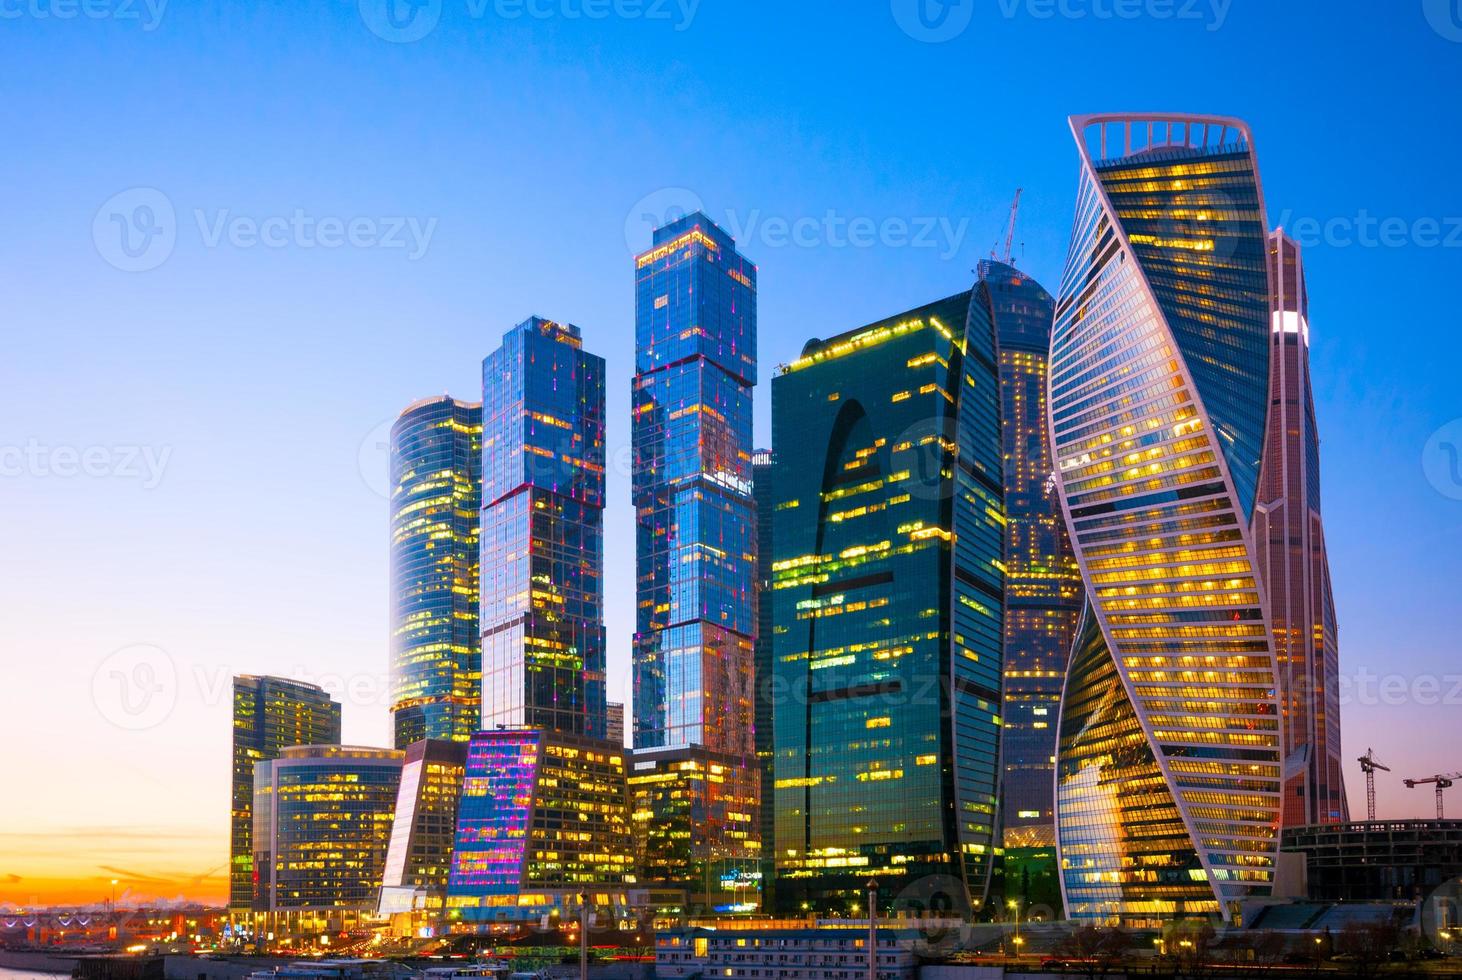 Vue de nuit du centre d'affaires international de gratte-ciel de la ville de photo